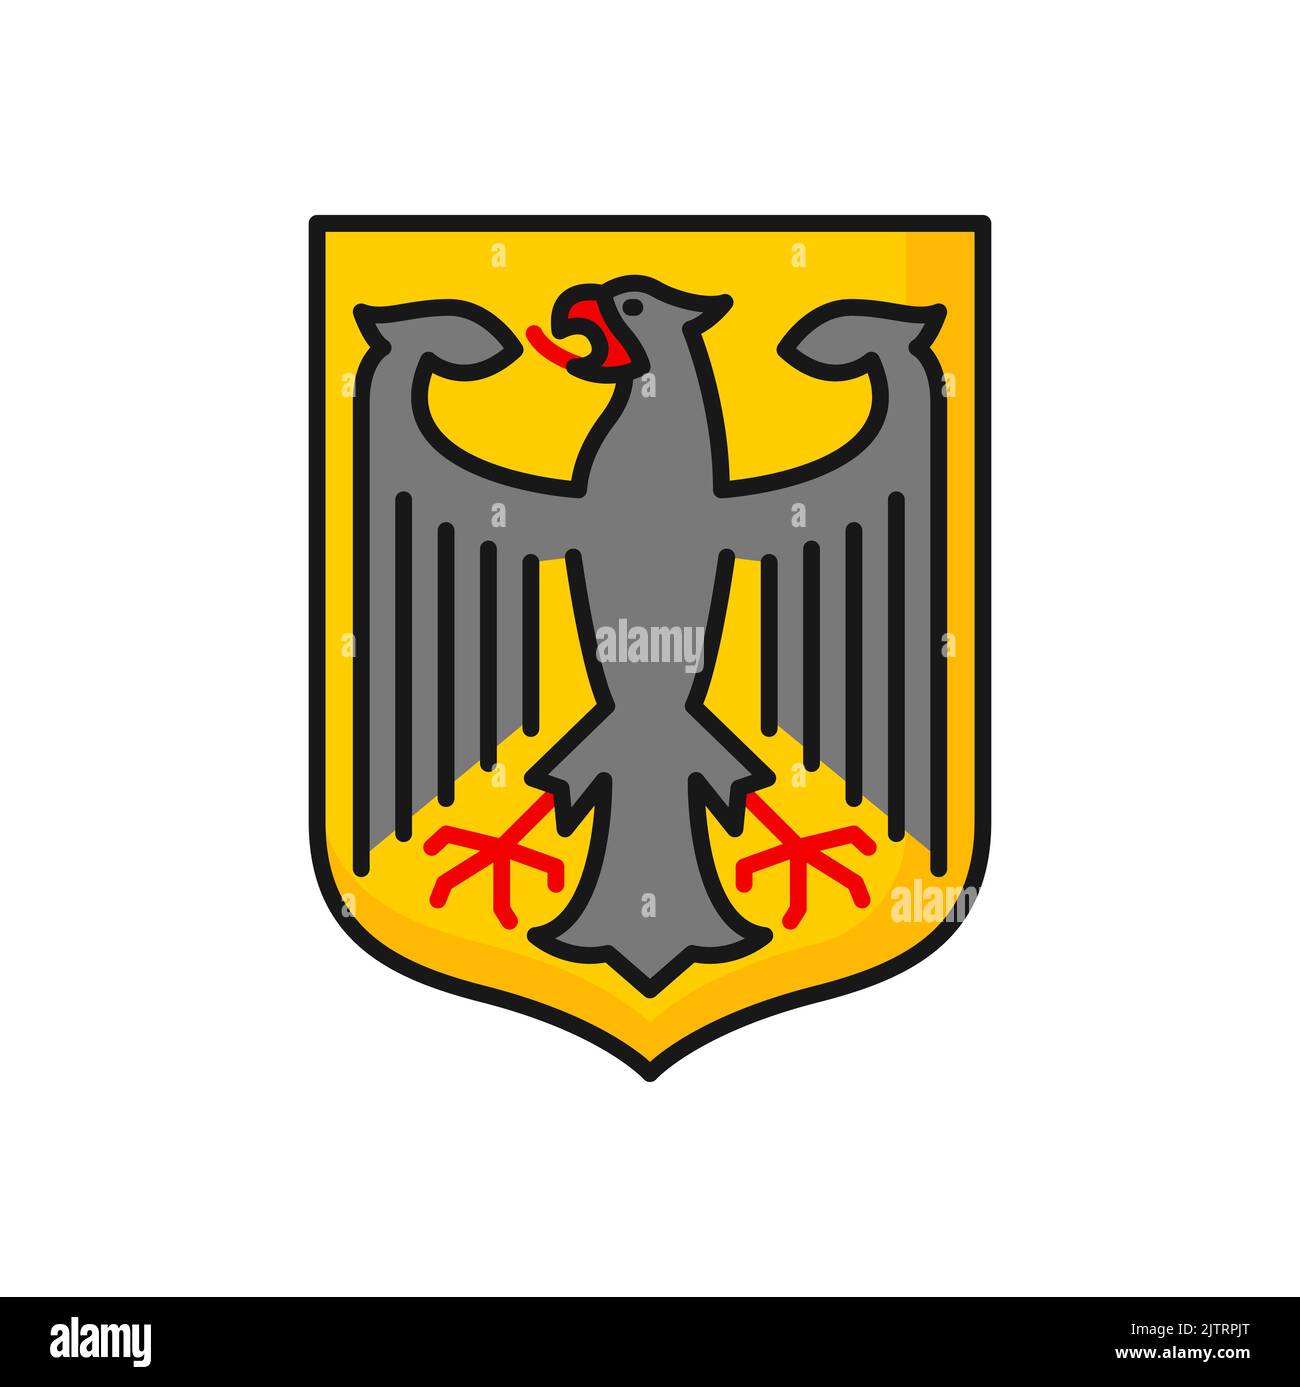 Insignia del águila alemana fotografías e imágenes de alta resolución -  Página 2 - Alamy